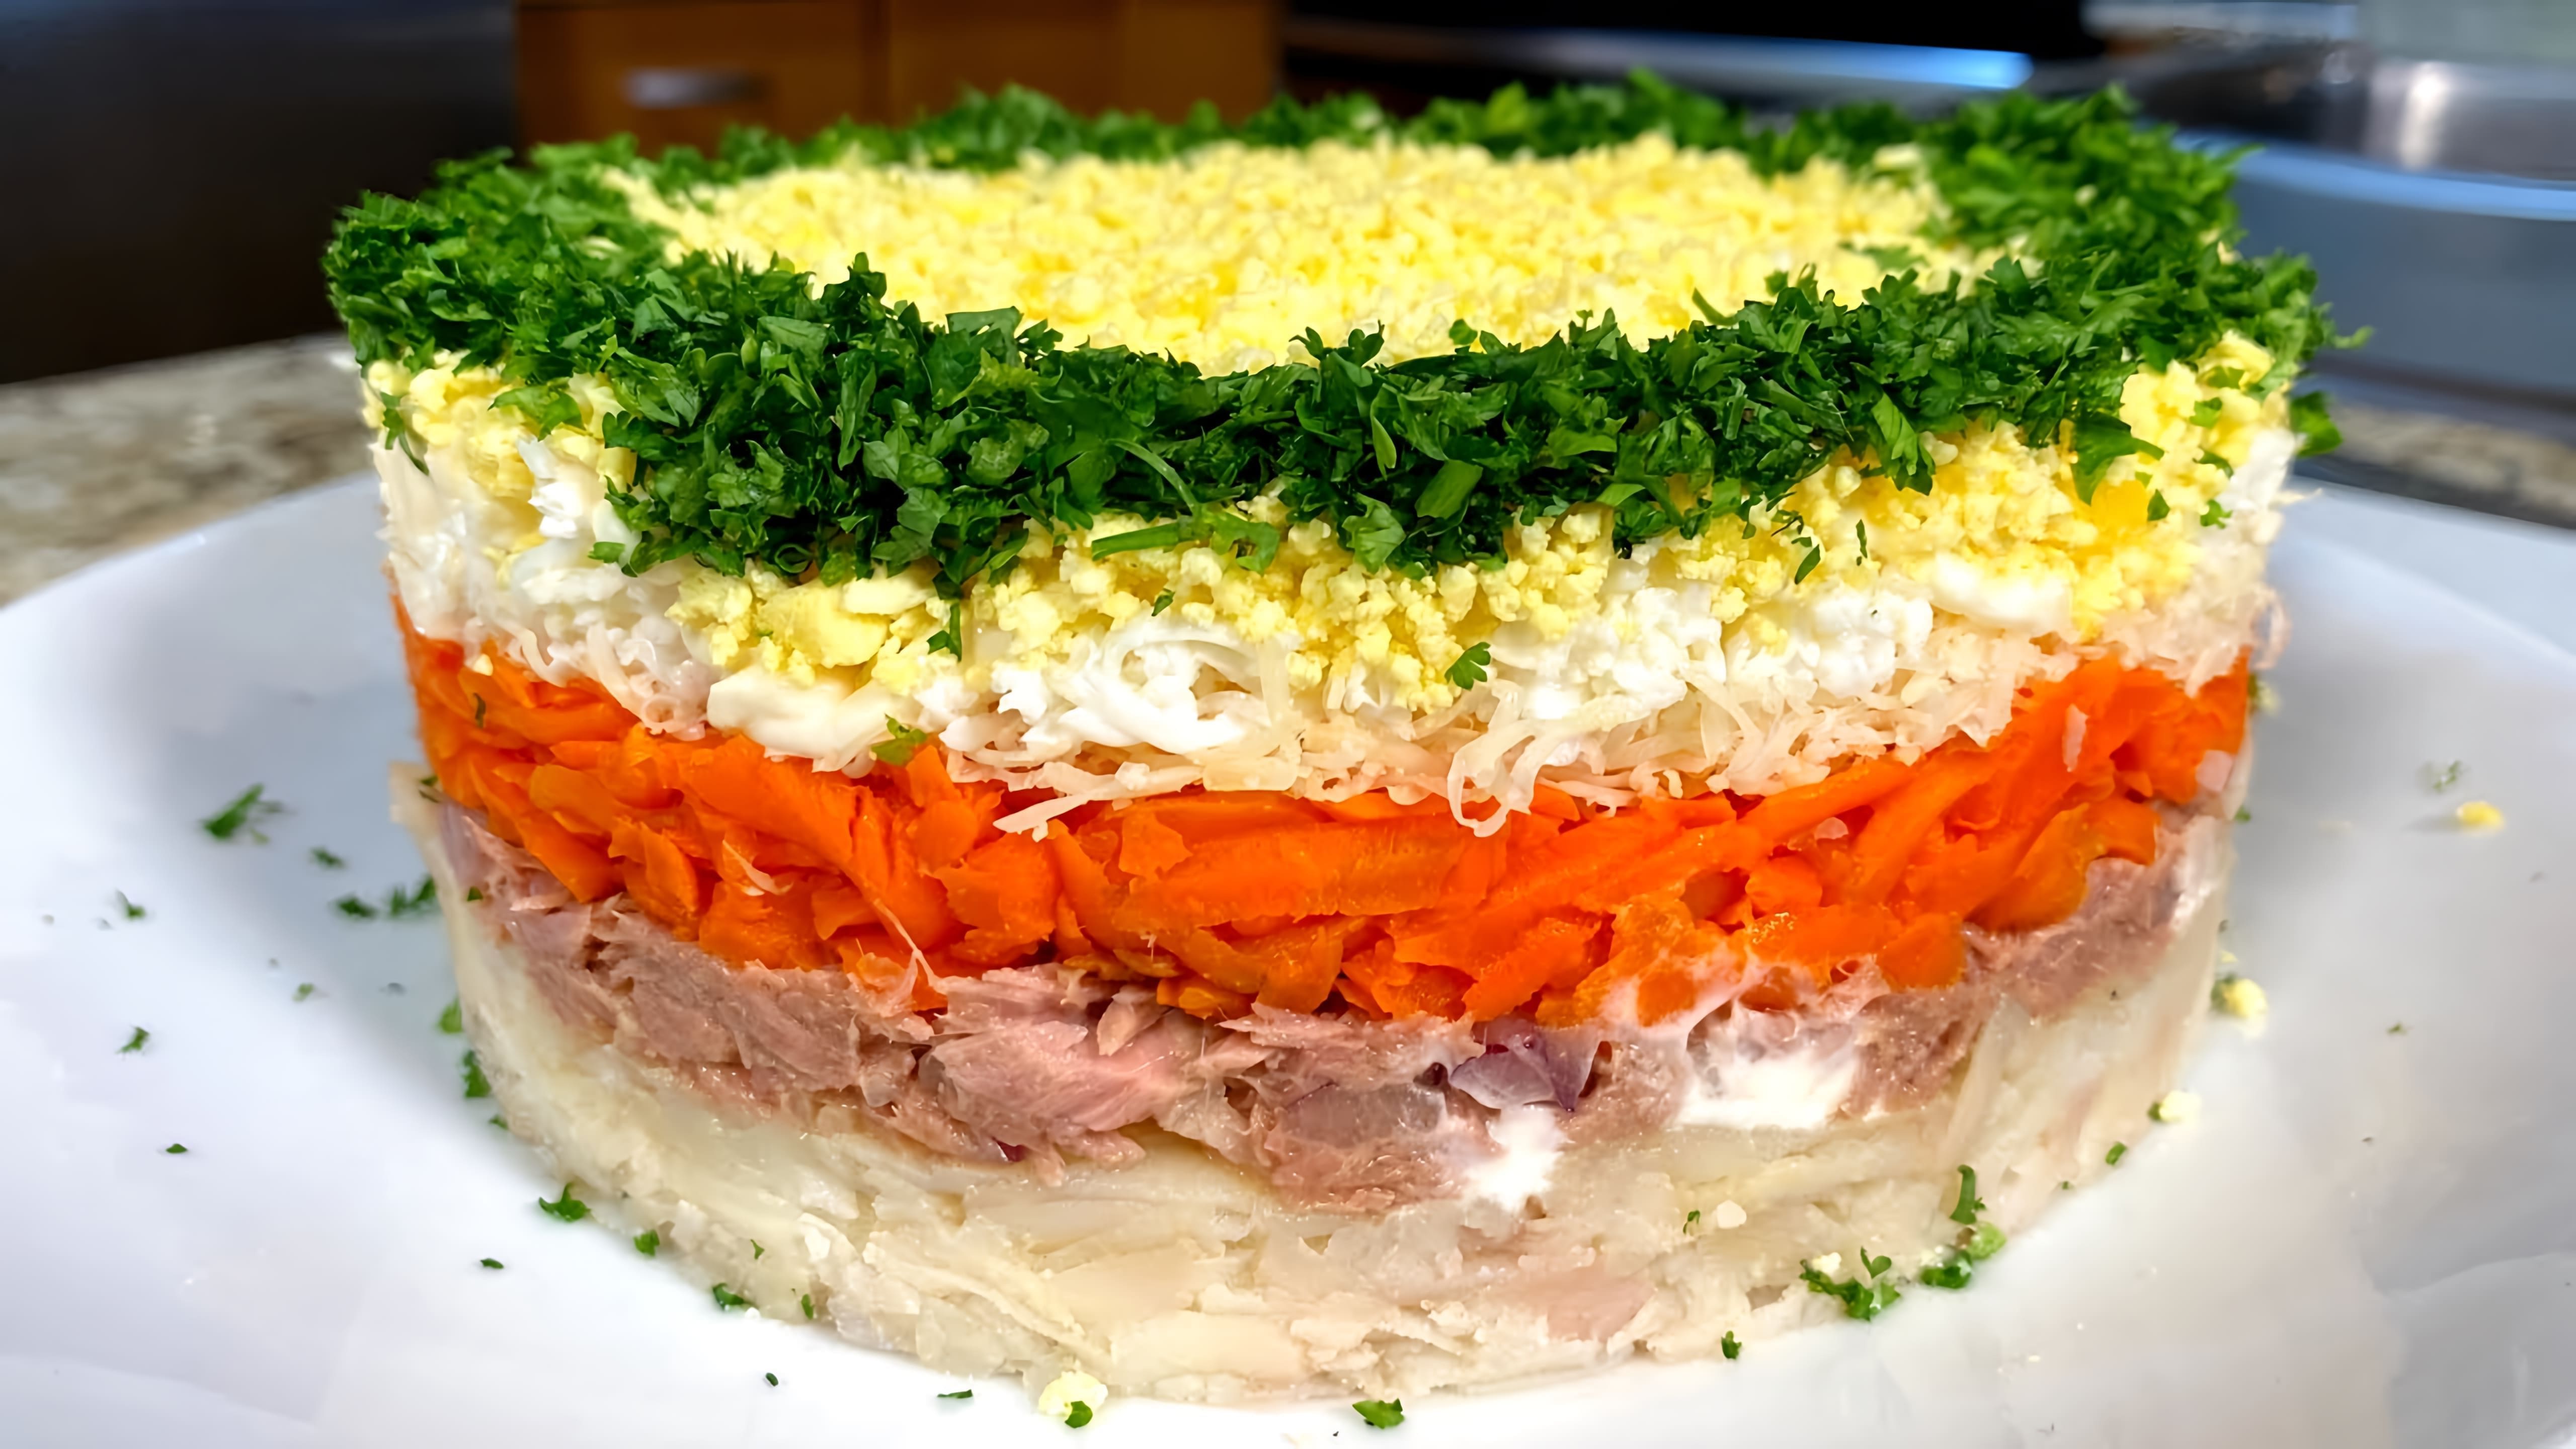 В этом видео демонстрируется рецепт салата "Мимоза", который является одним из самых популярных и вкусных салатов